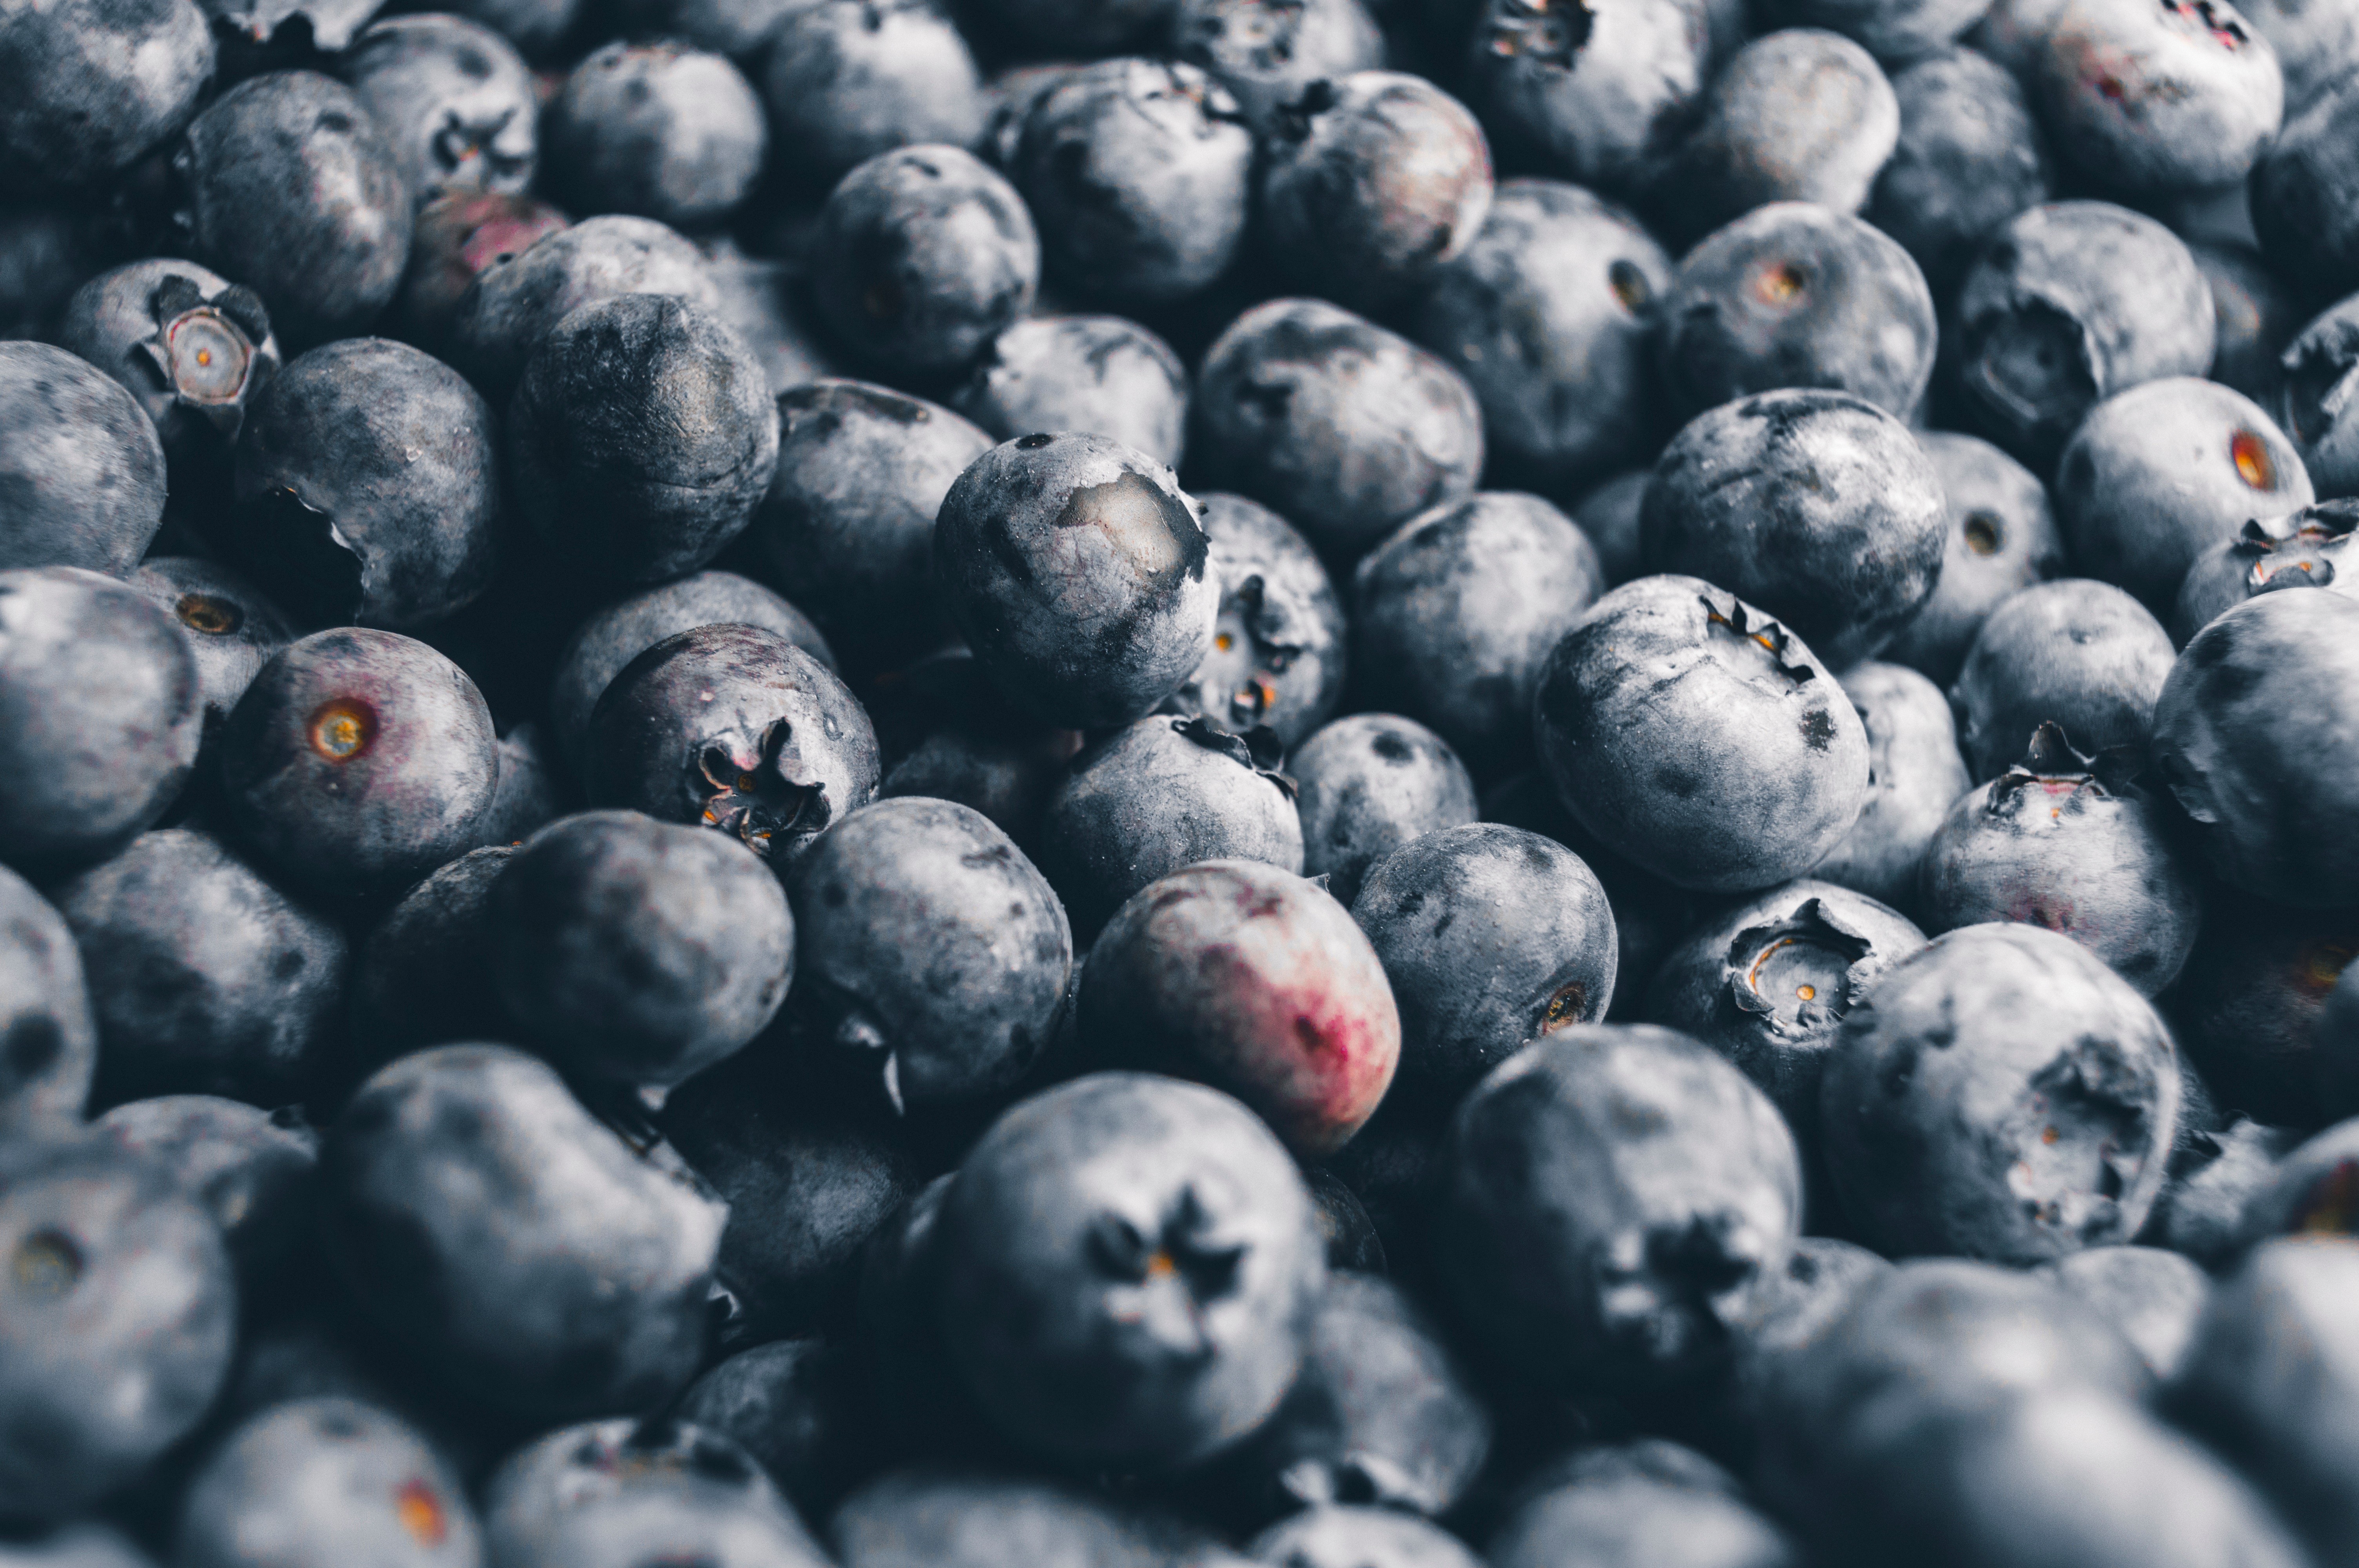 General 6016x4000 fruit blueberries food berries